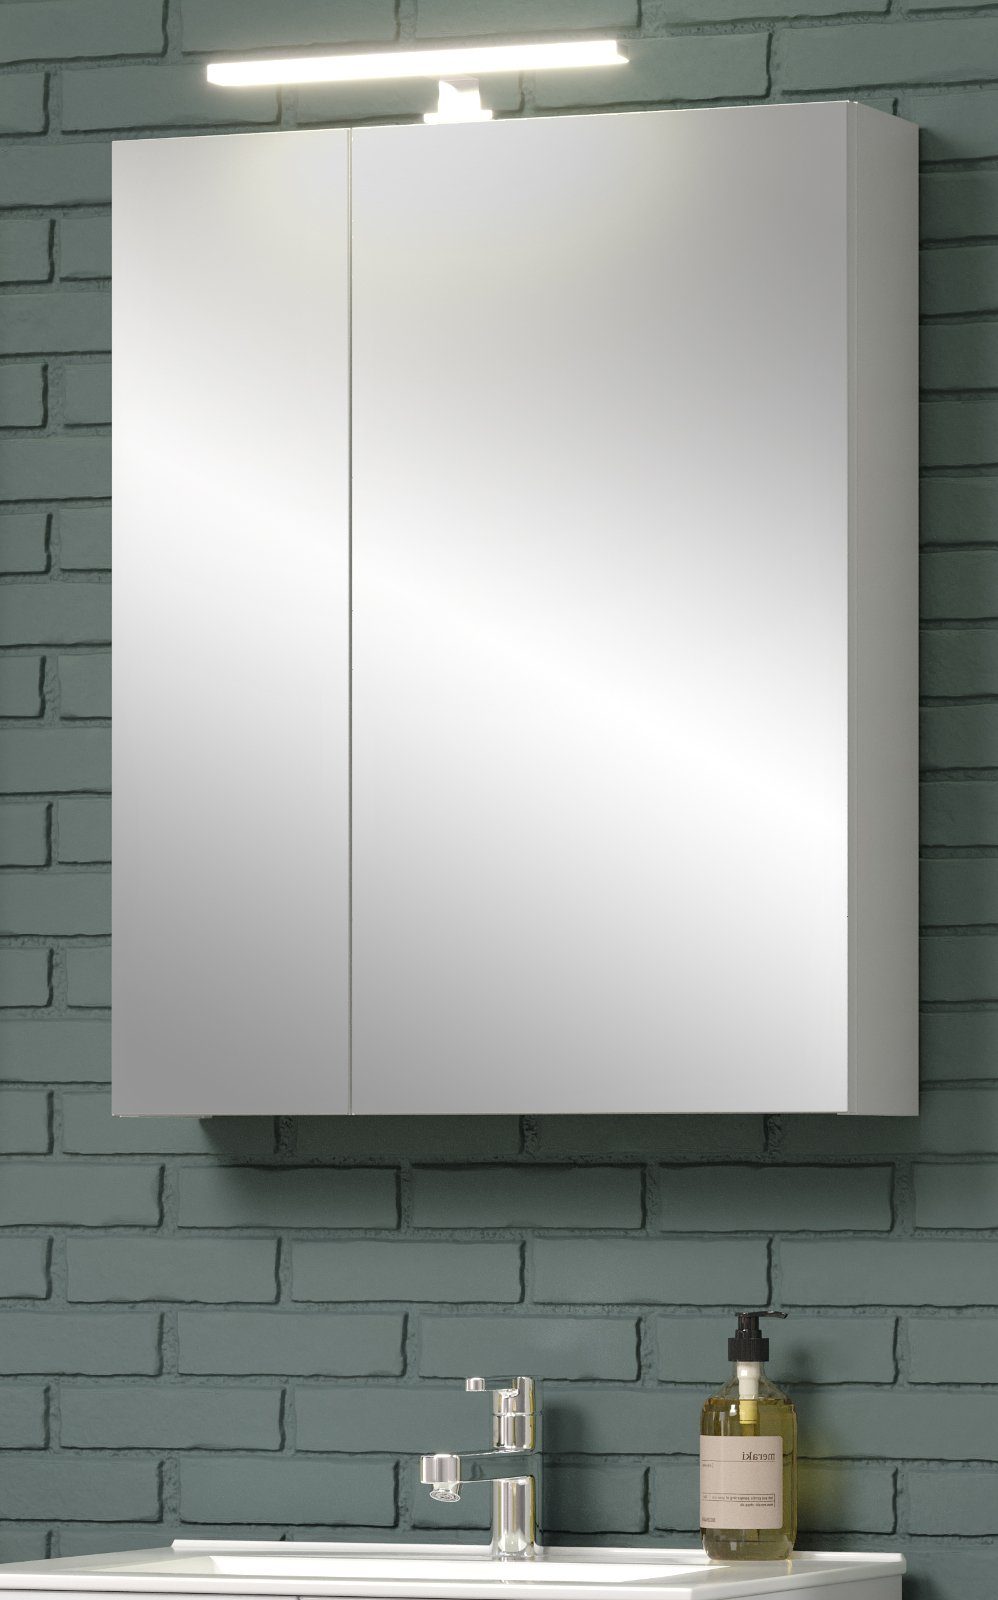 Furn.Design Badezimmerspiegelschrank Riva (Badschrank in weiß, 60 x 75 cm) 2-türig